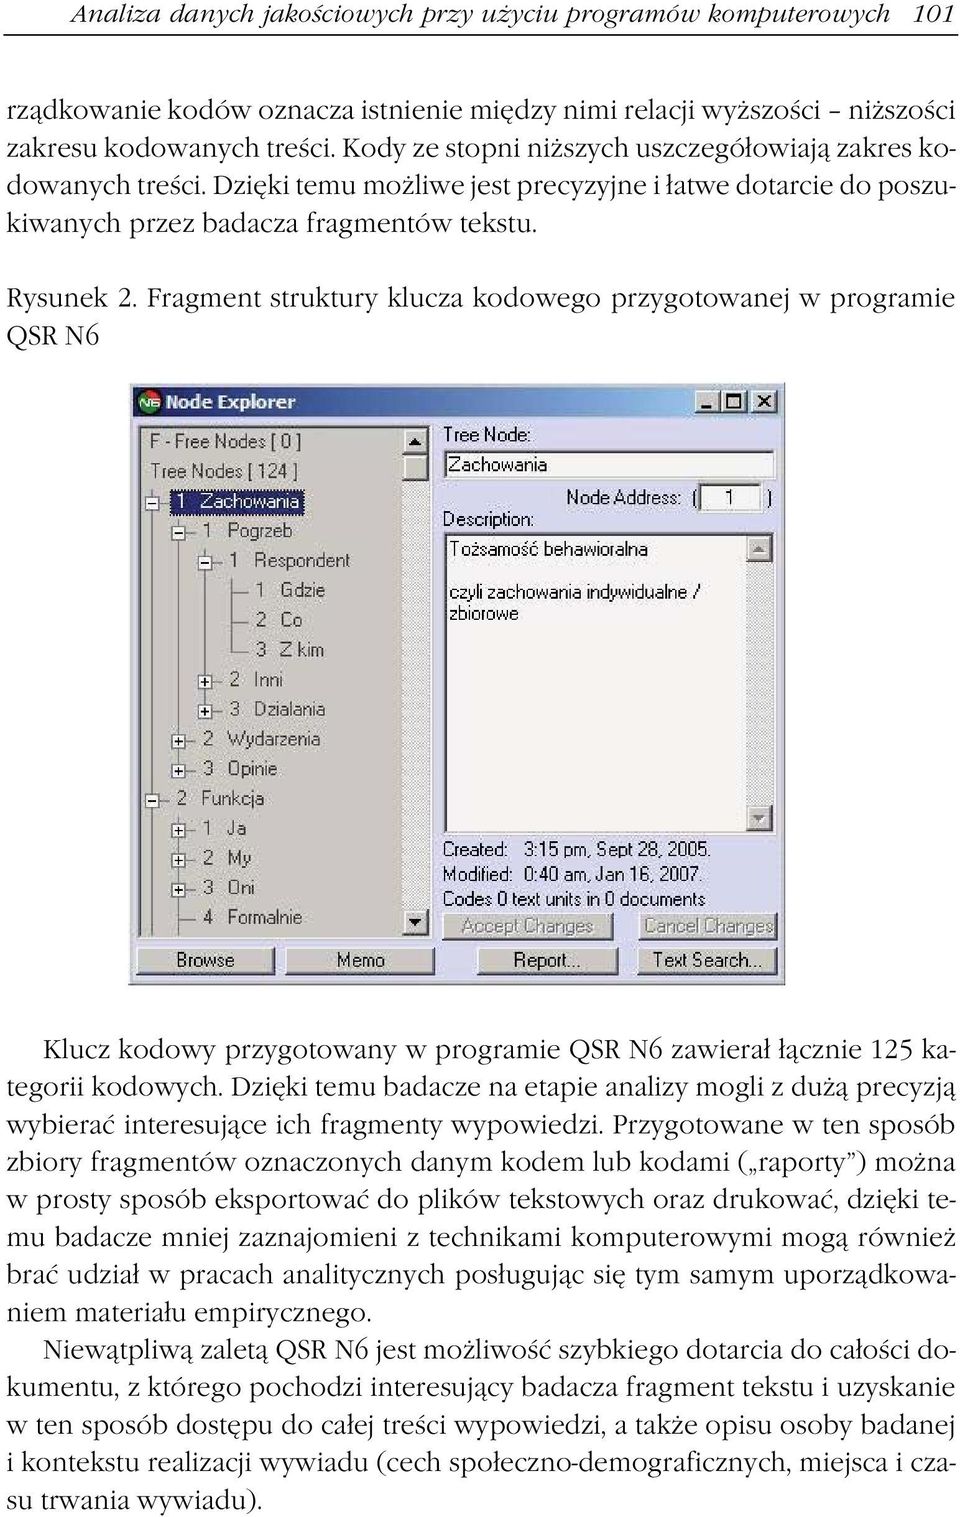 Fragment struktury klucza kodowego przygotowanej w programie QSR N6 Klucz kodowy przygotowany w programie QSR N6 zawierał łącznie 125 kategorii kodowych.